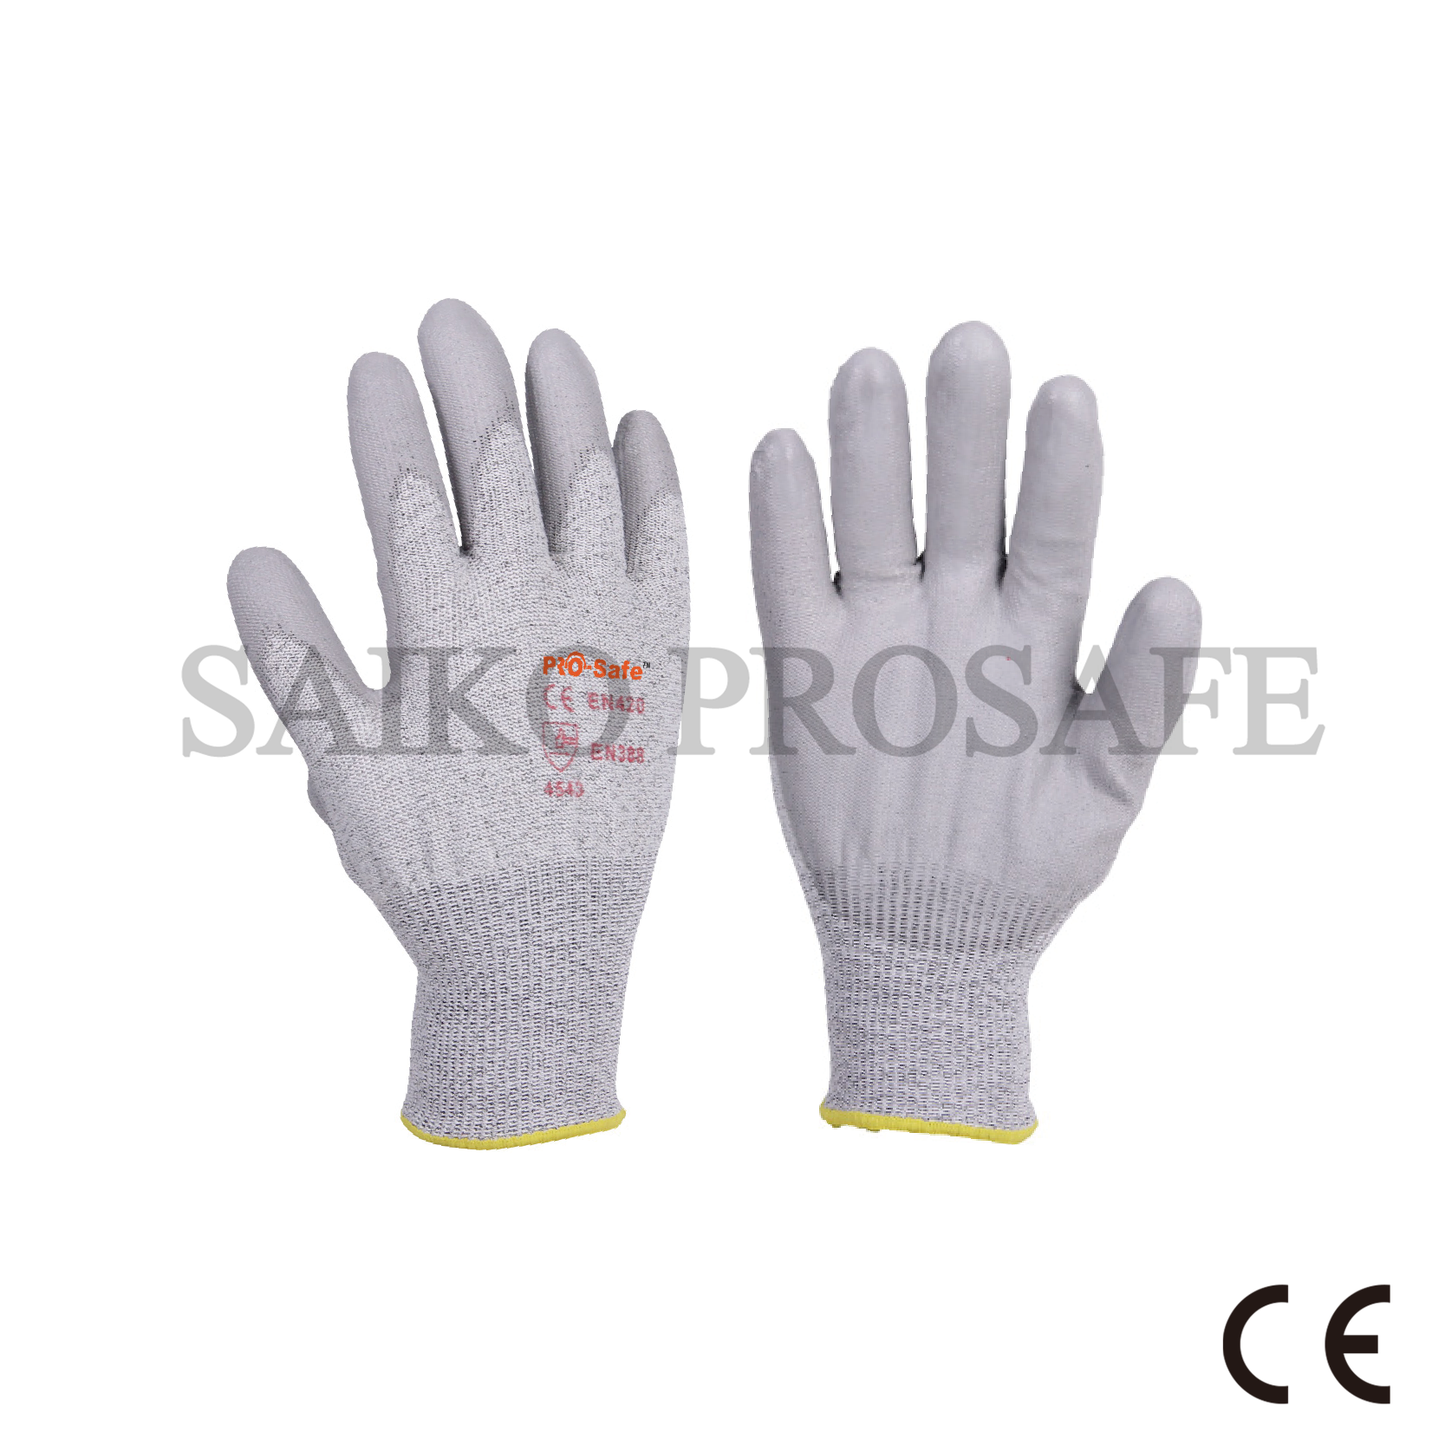 Anticut work gloves KM1509300